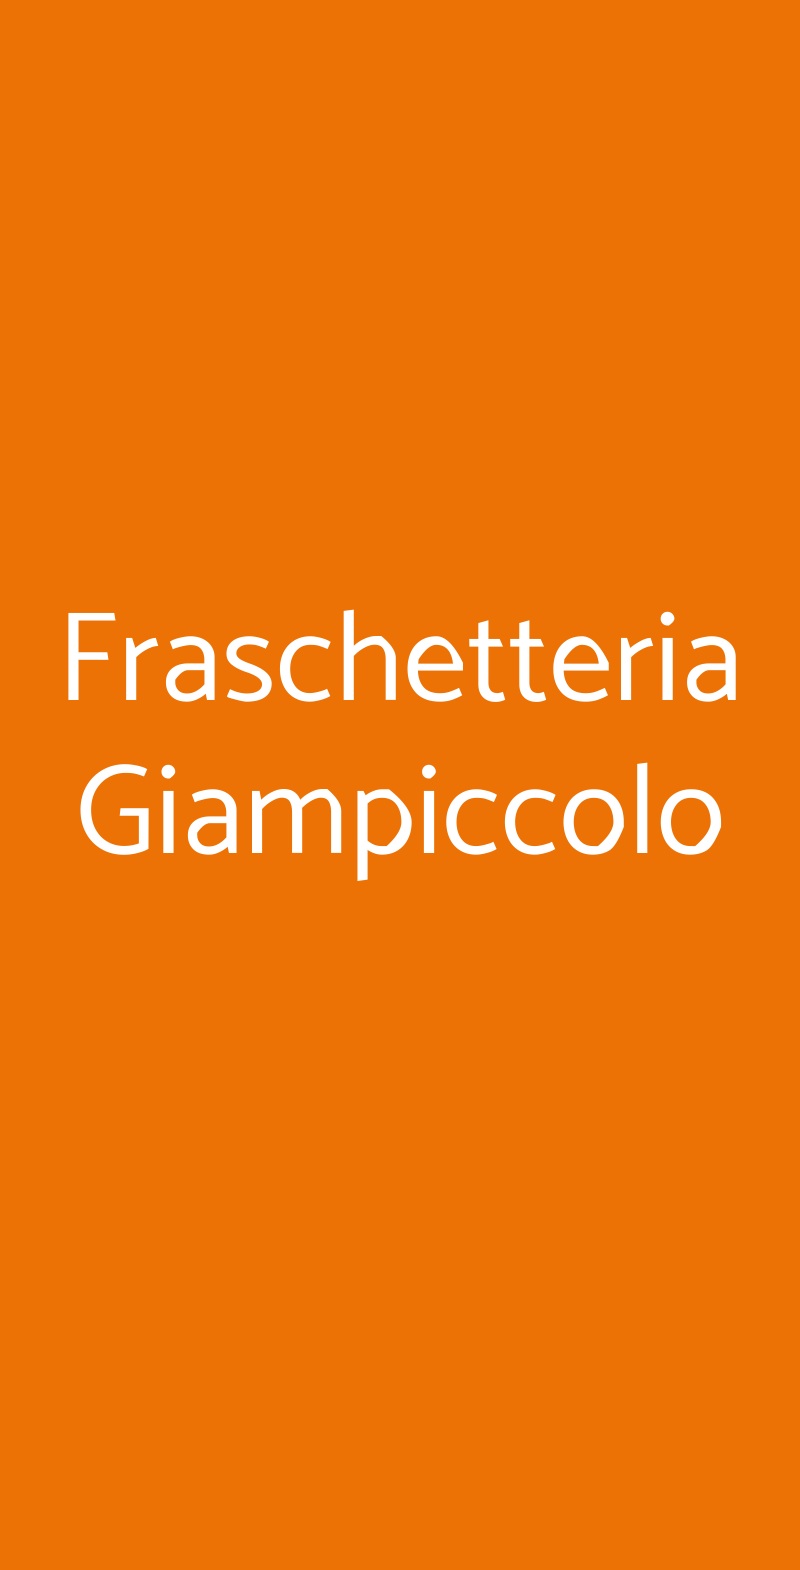 Fraschetteria Giampiccolo Roma menù 1 pagina